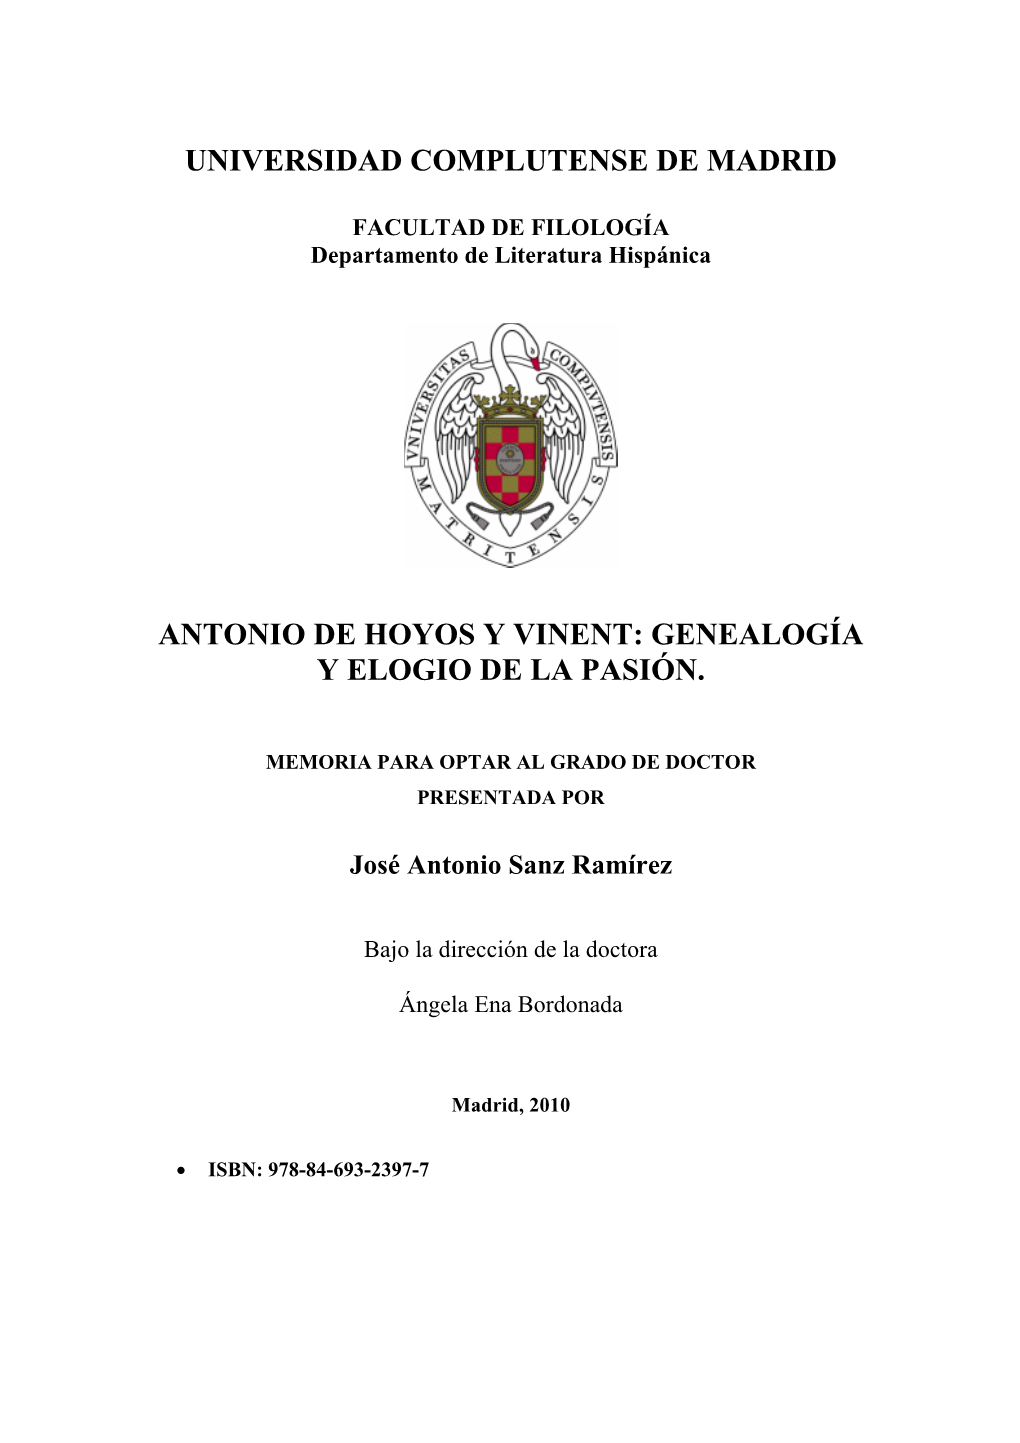 Antonio De Hoyos Y Vinent: Genealogía Y Elogio De La Pasión